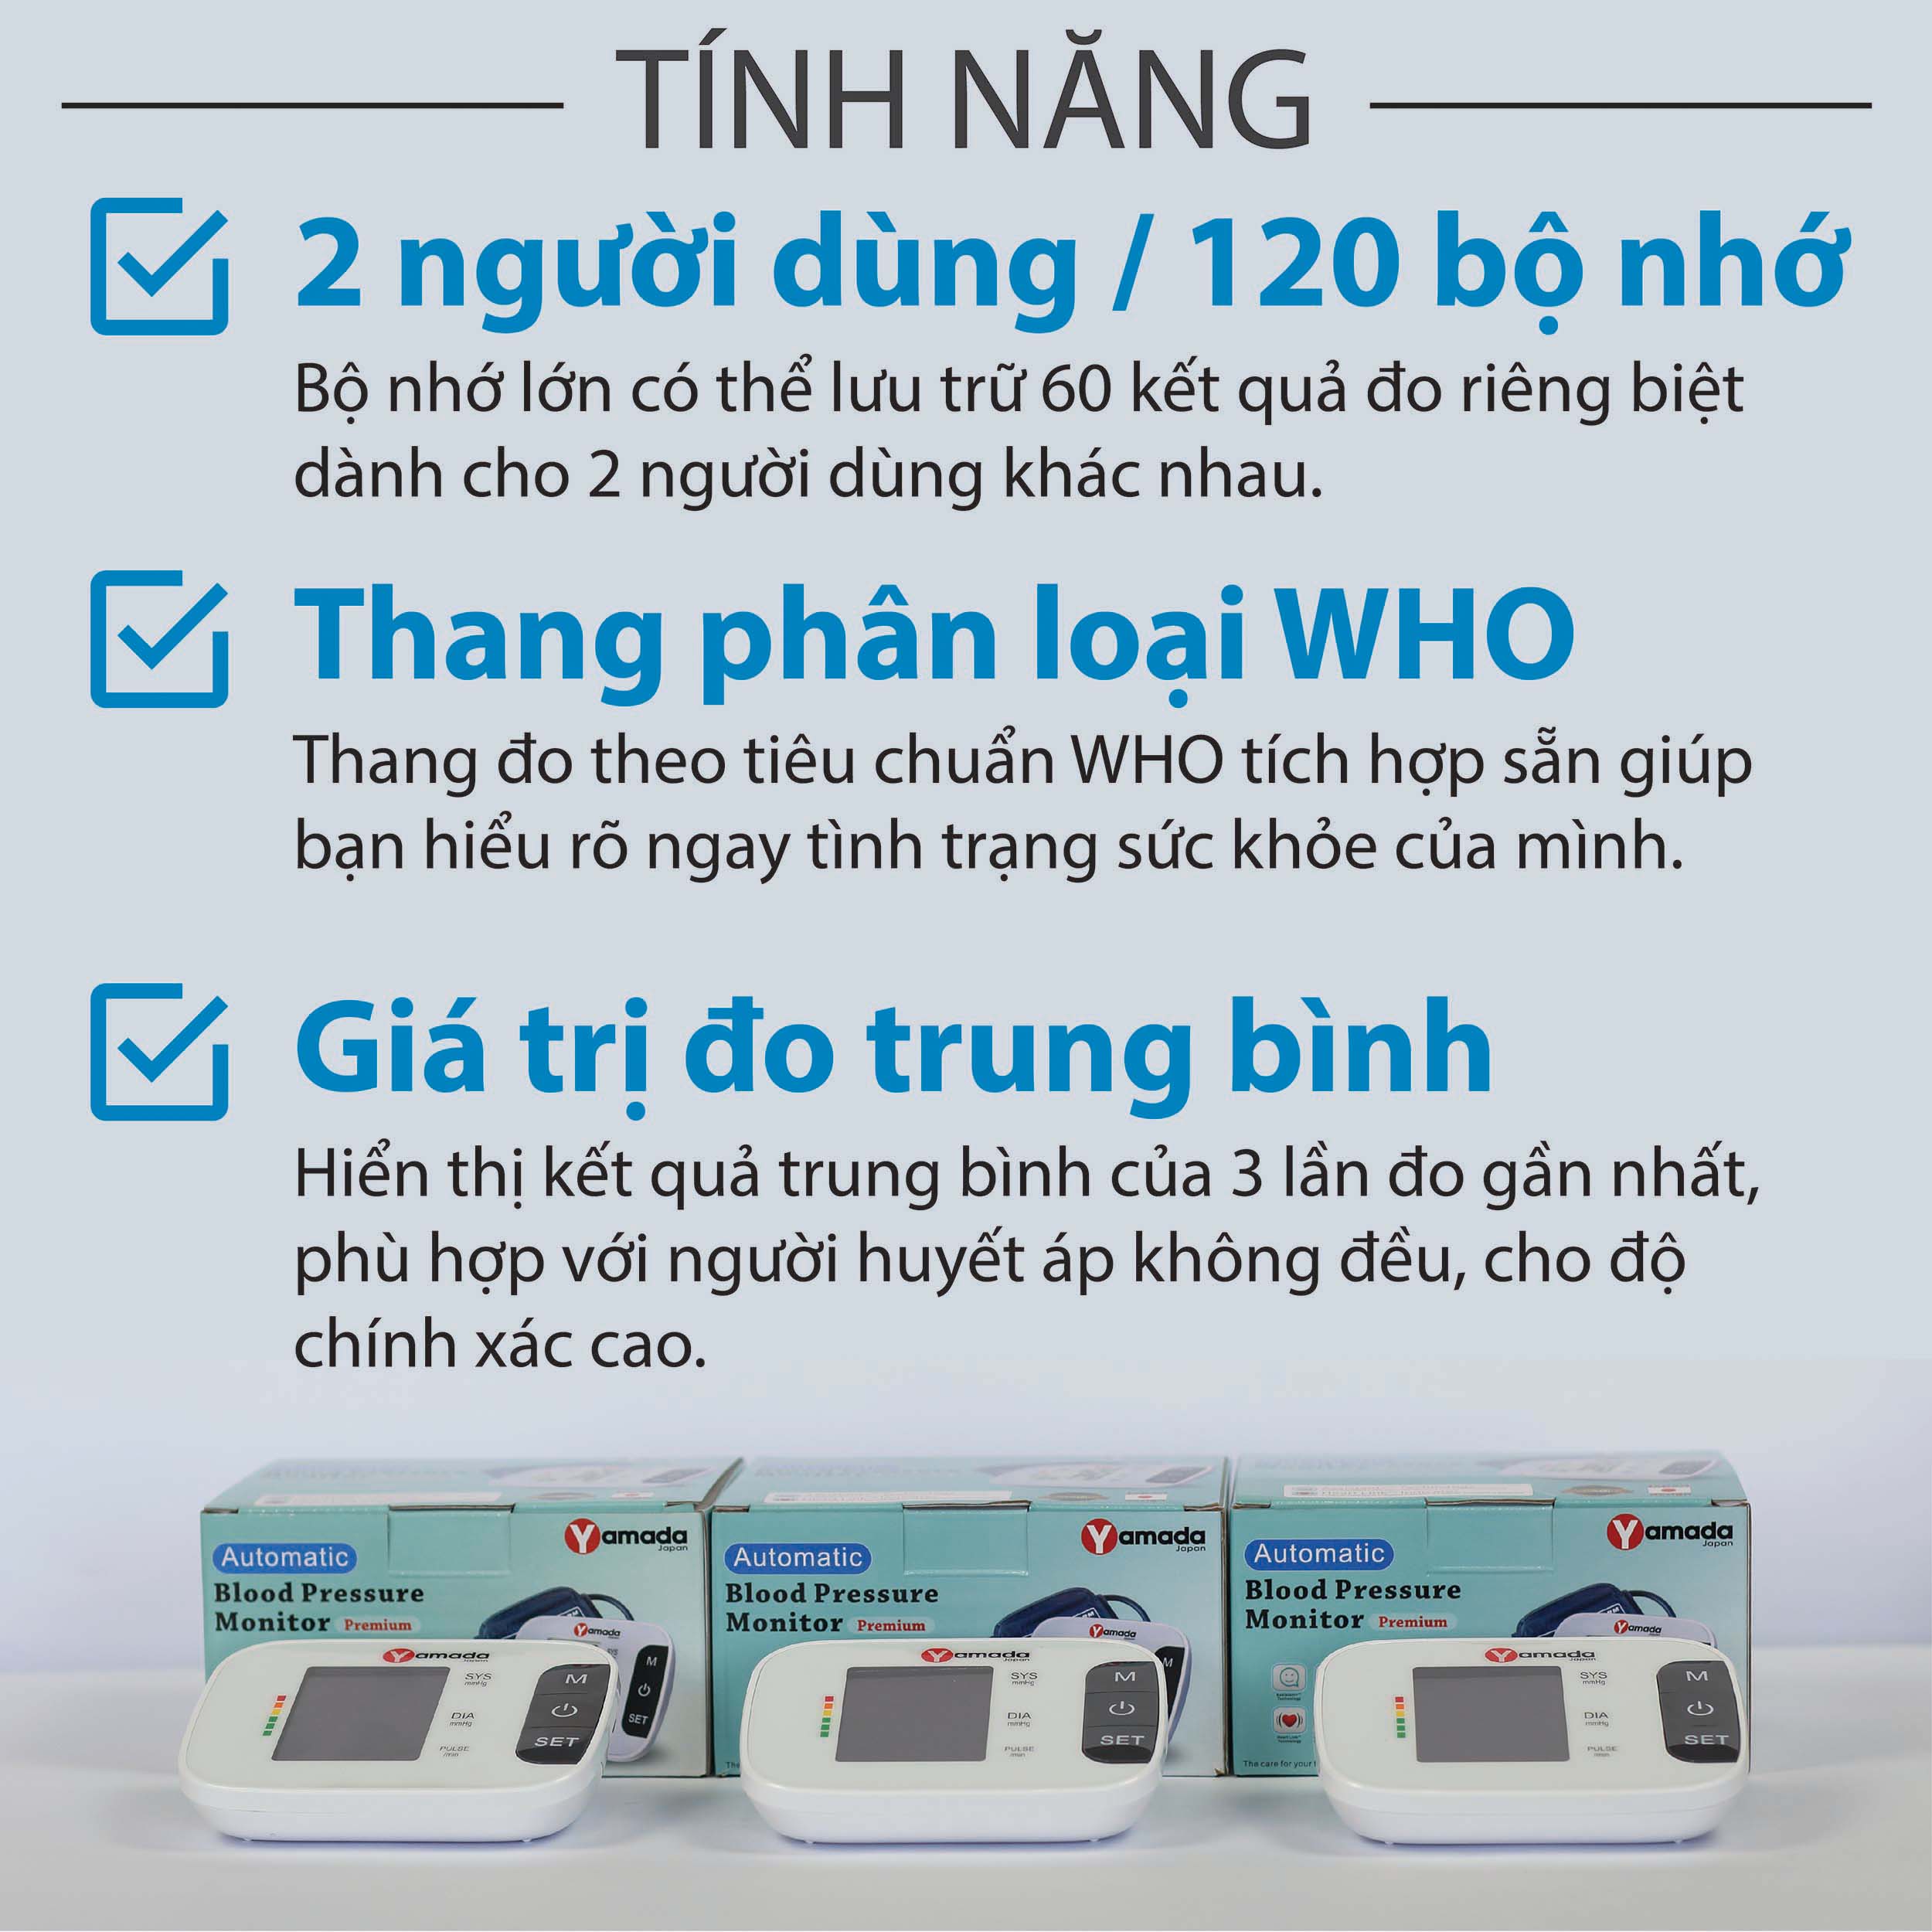 Máy đo huyết áp bắp tay điện tử Yamada - trợ lý ảo Assistant+ giọng nói tiếng Việt thông minh, đọc kết quả, cảnh báo nhịp tim Heart Link, đo chính xác, thiết kế cao cấp